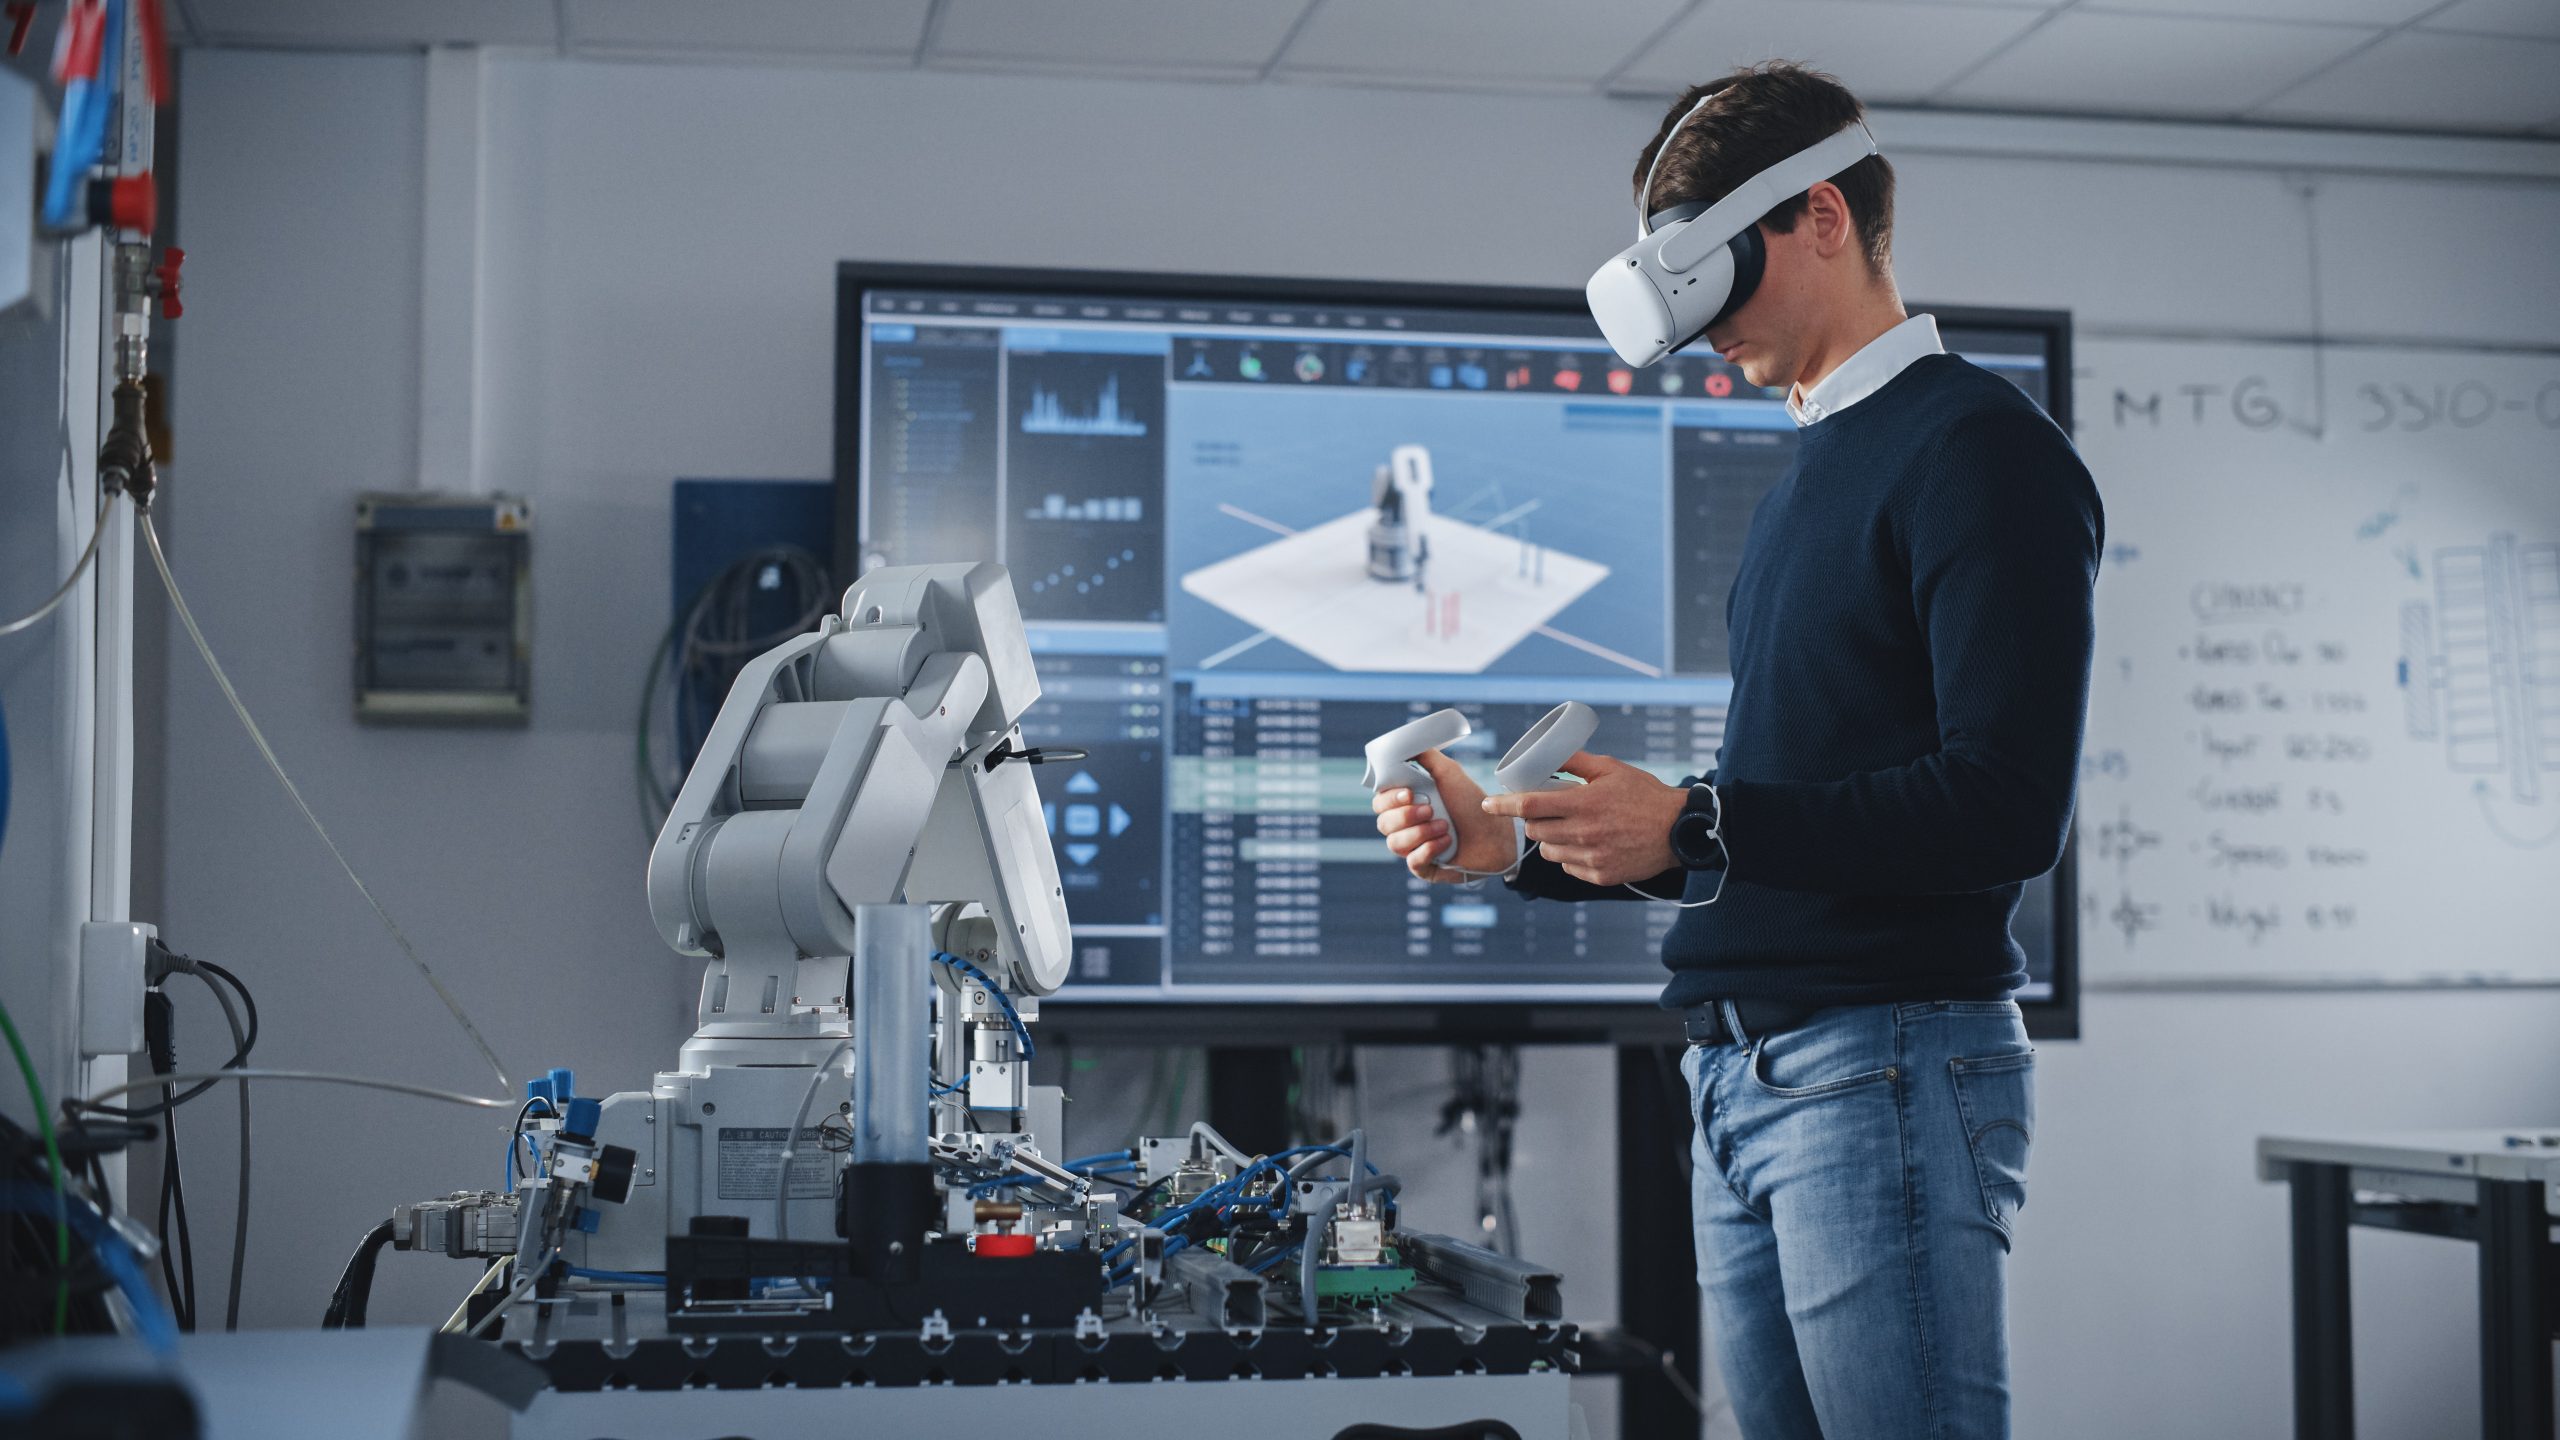 Im Hörsaal einer High-Tech-Universität konzentriert sich ein Mann mit VR-Brille und Controllern auf seine Robotikstudien.